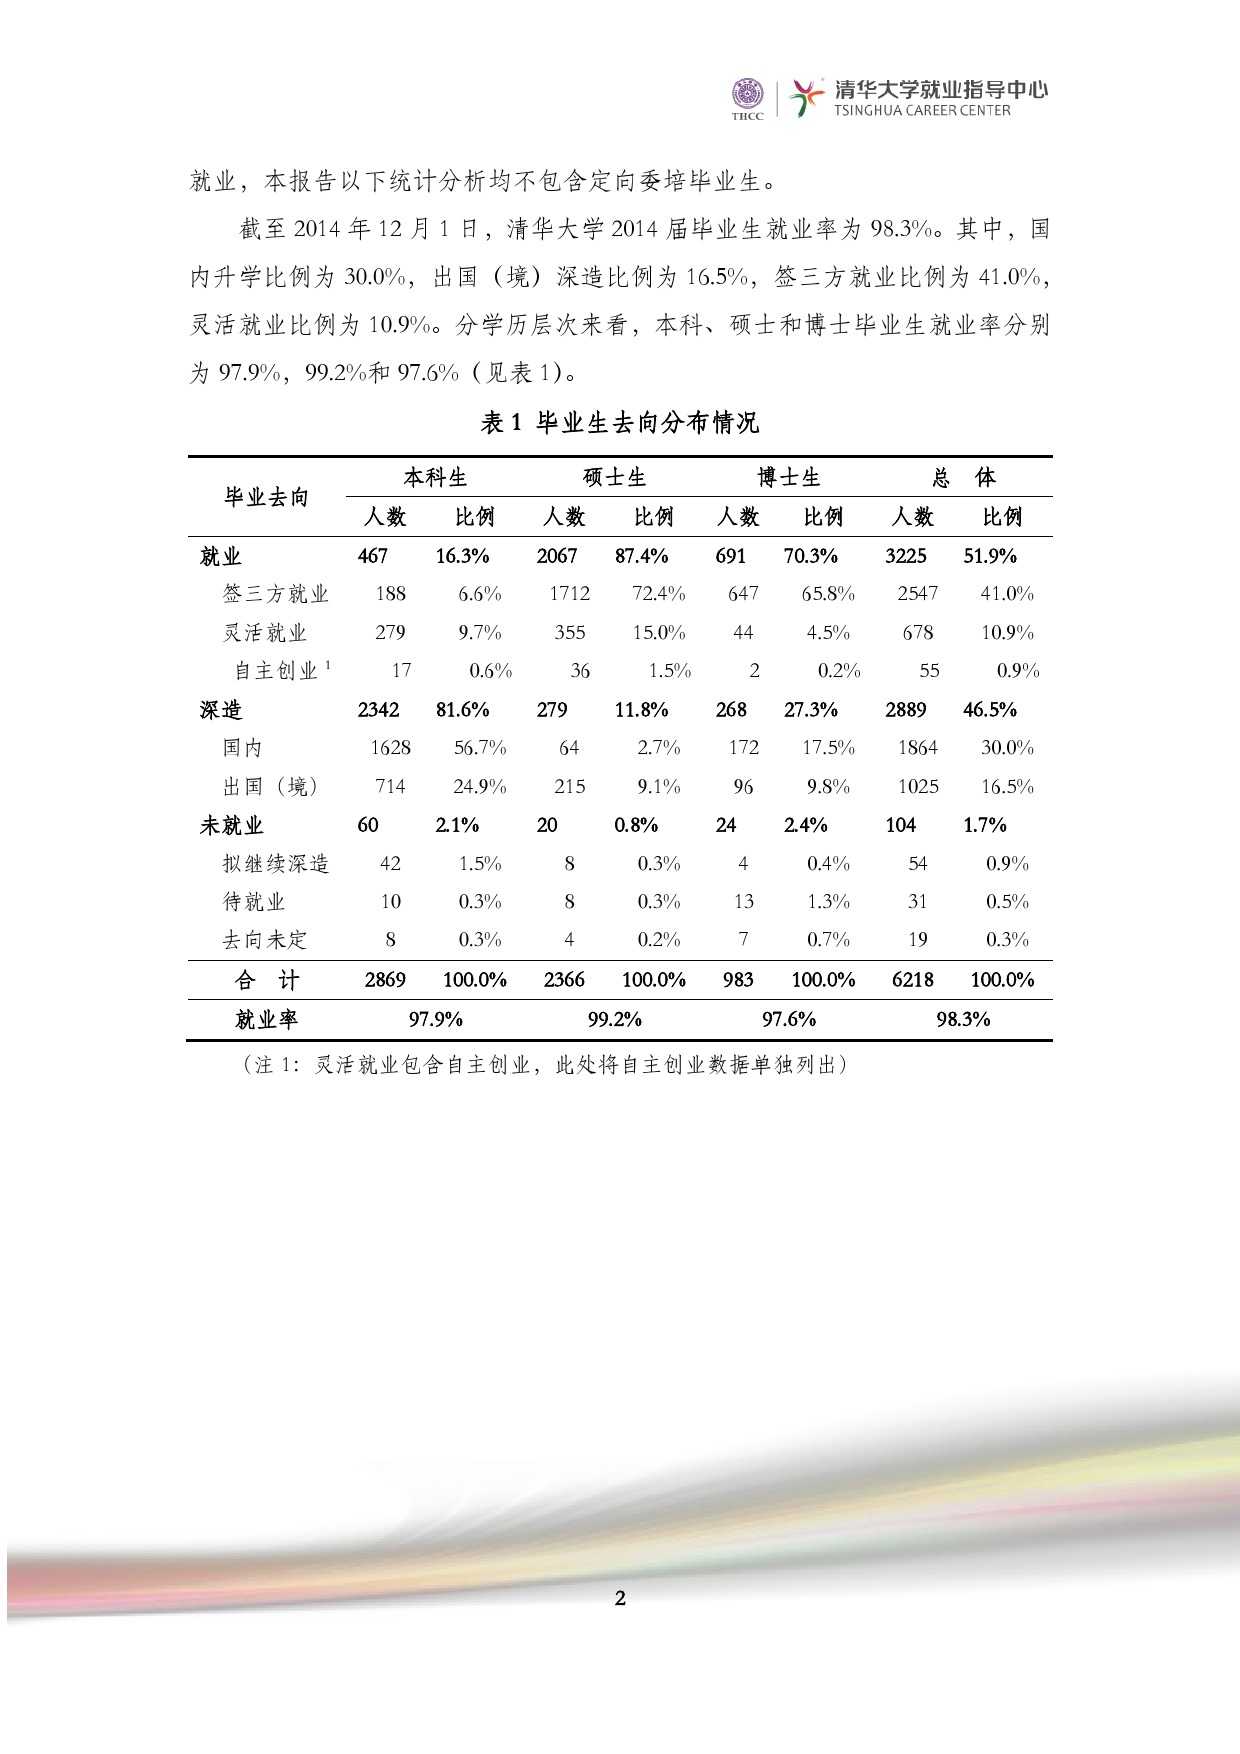 清華大學2014 年畢業生就業質量報告_000004